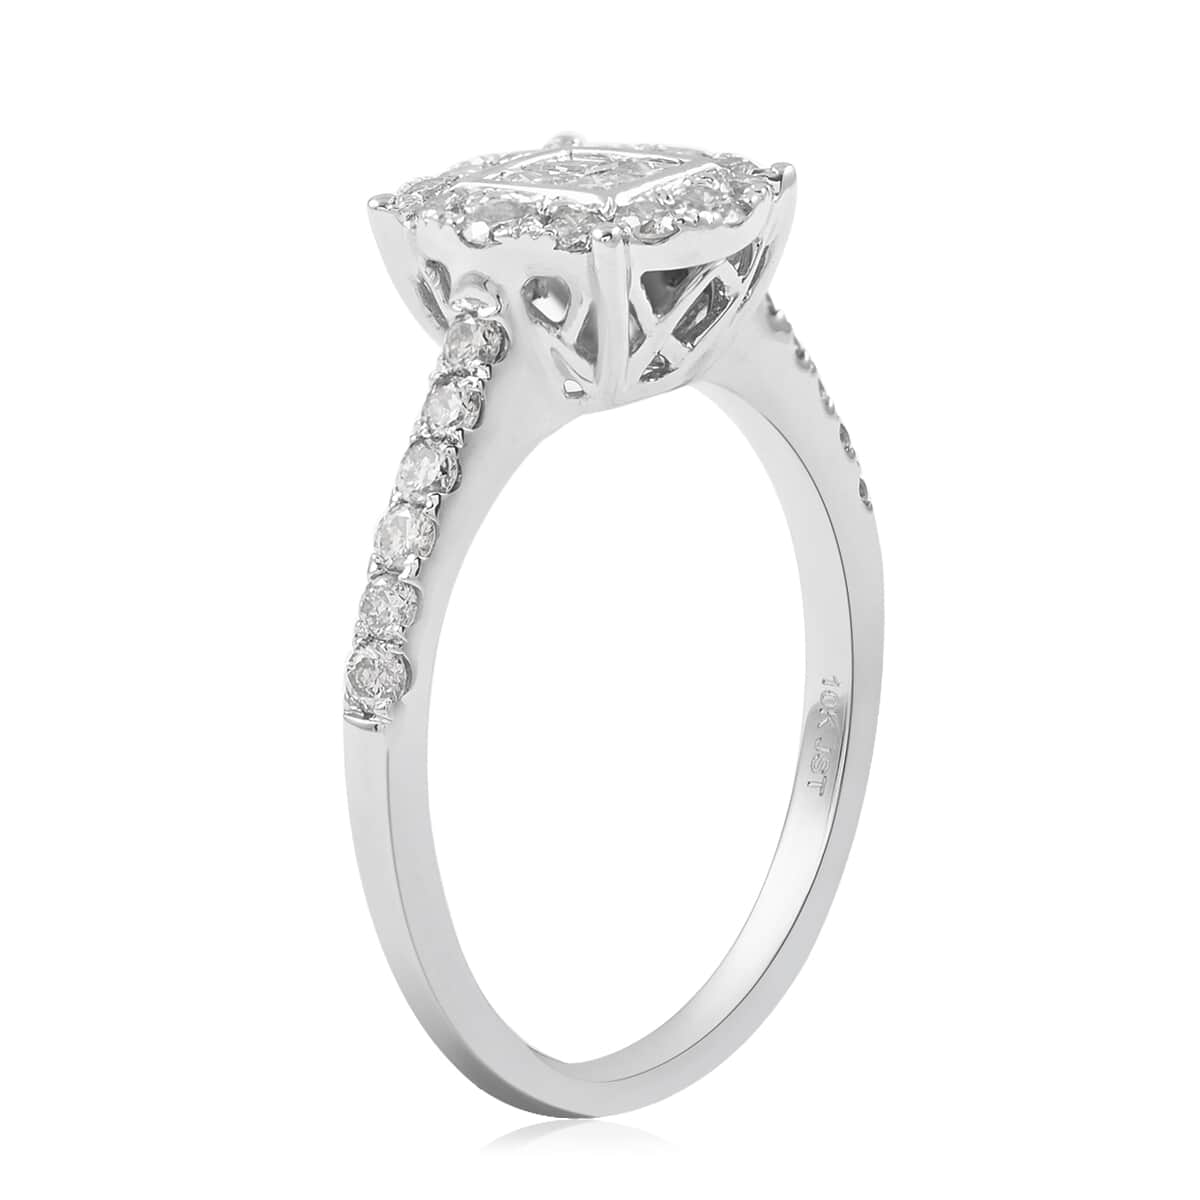 10K White Gold Diamond I-J I1 Ring (Size 7.0) 2.75 Grams 0.75 ctw image number 3